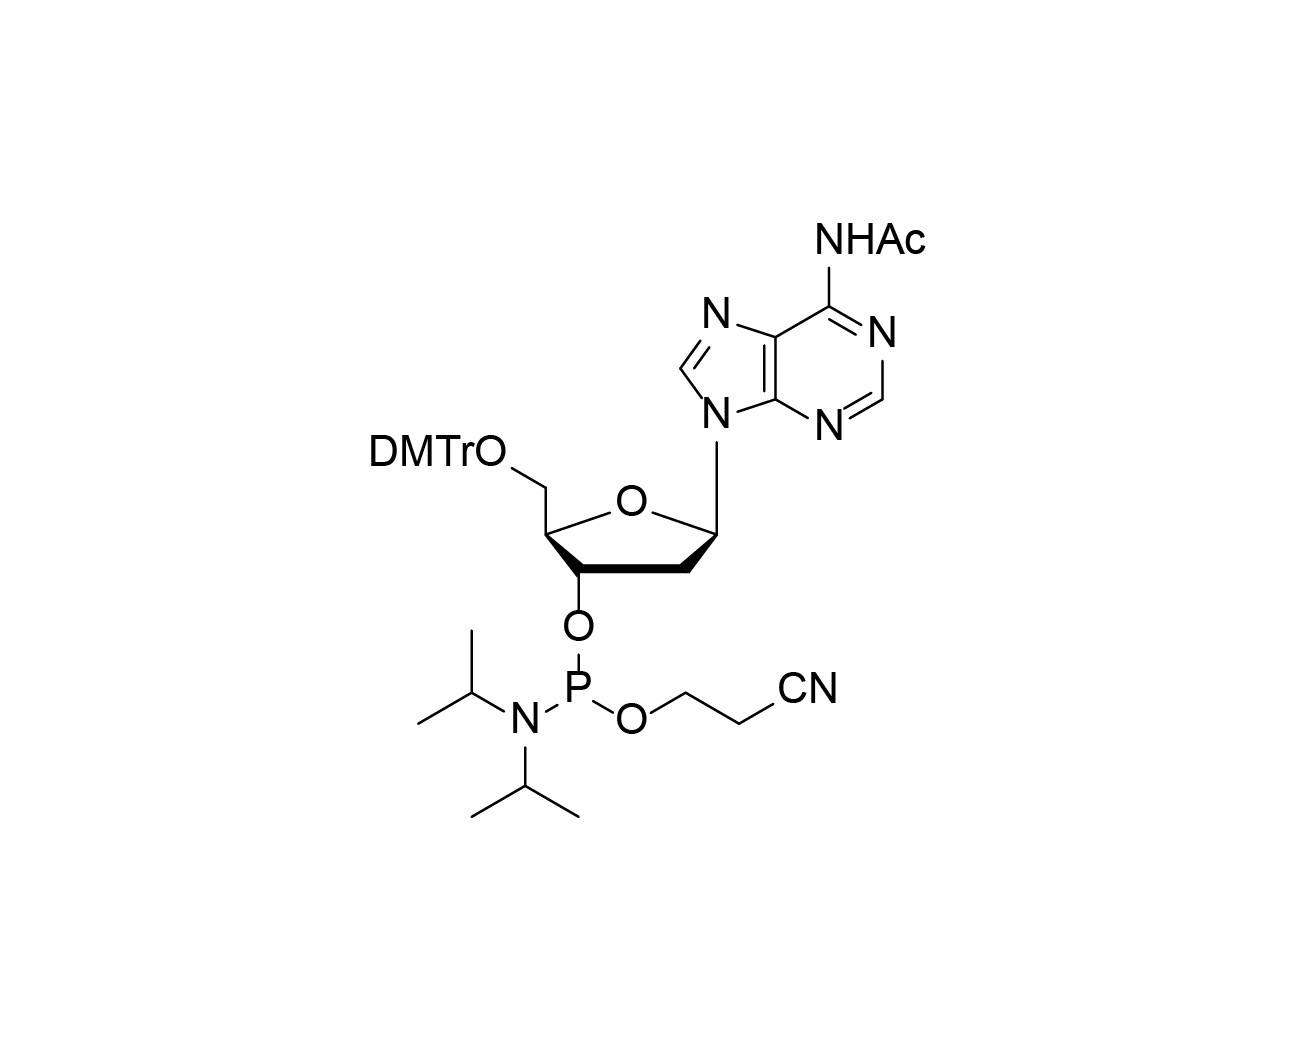 DMTr-dA(Ac)-3'-CE-Phosphoramidite